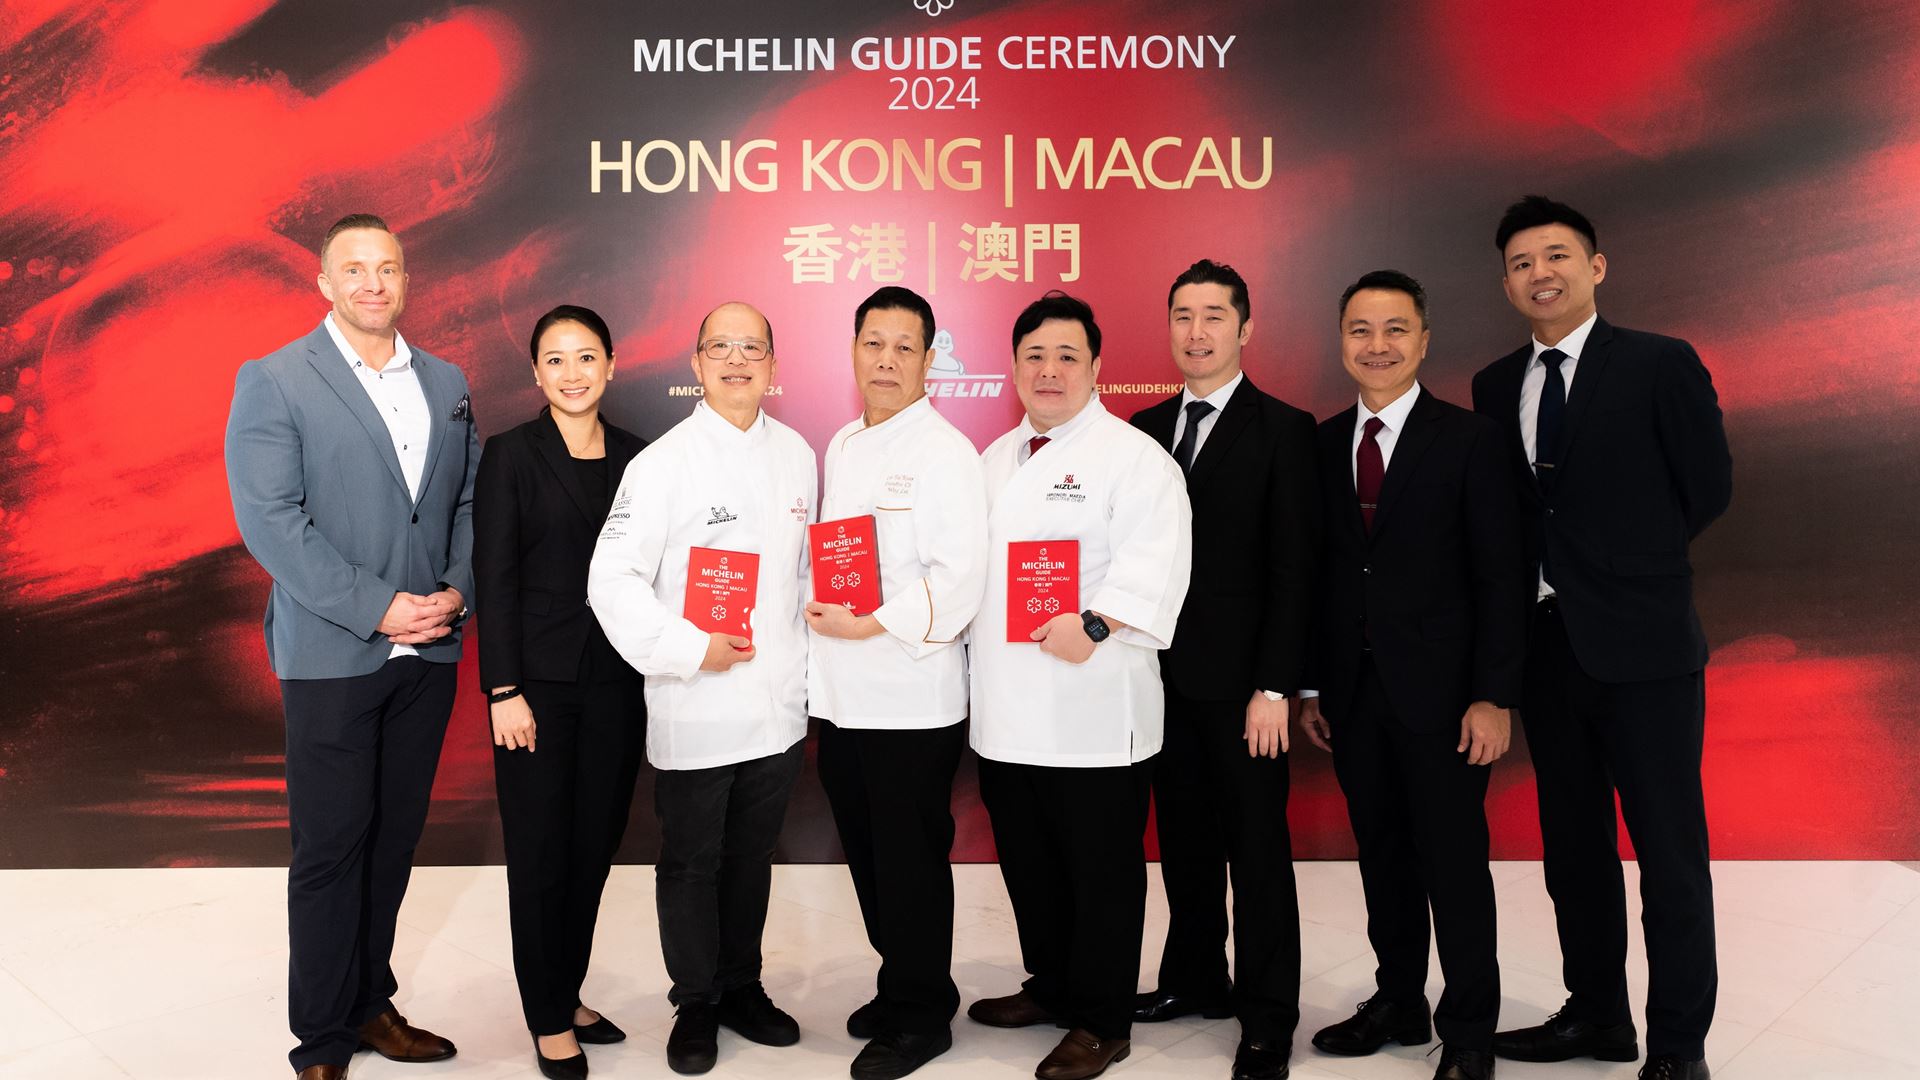 永利旗下三間高級食府於《香港澳門米芝蓮指南2024》合共奪五顆星